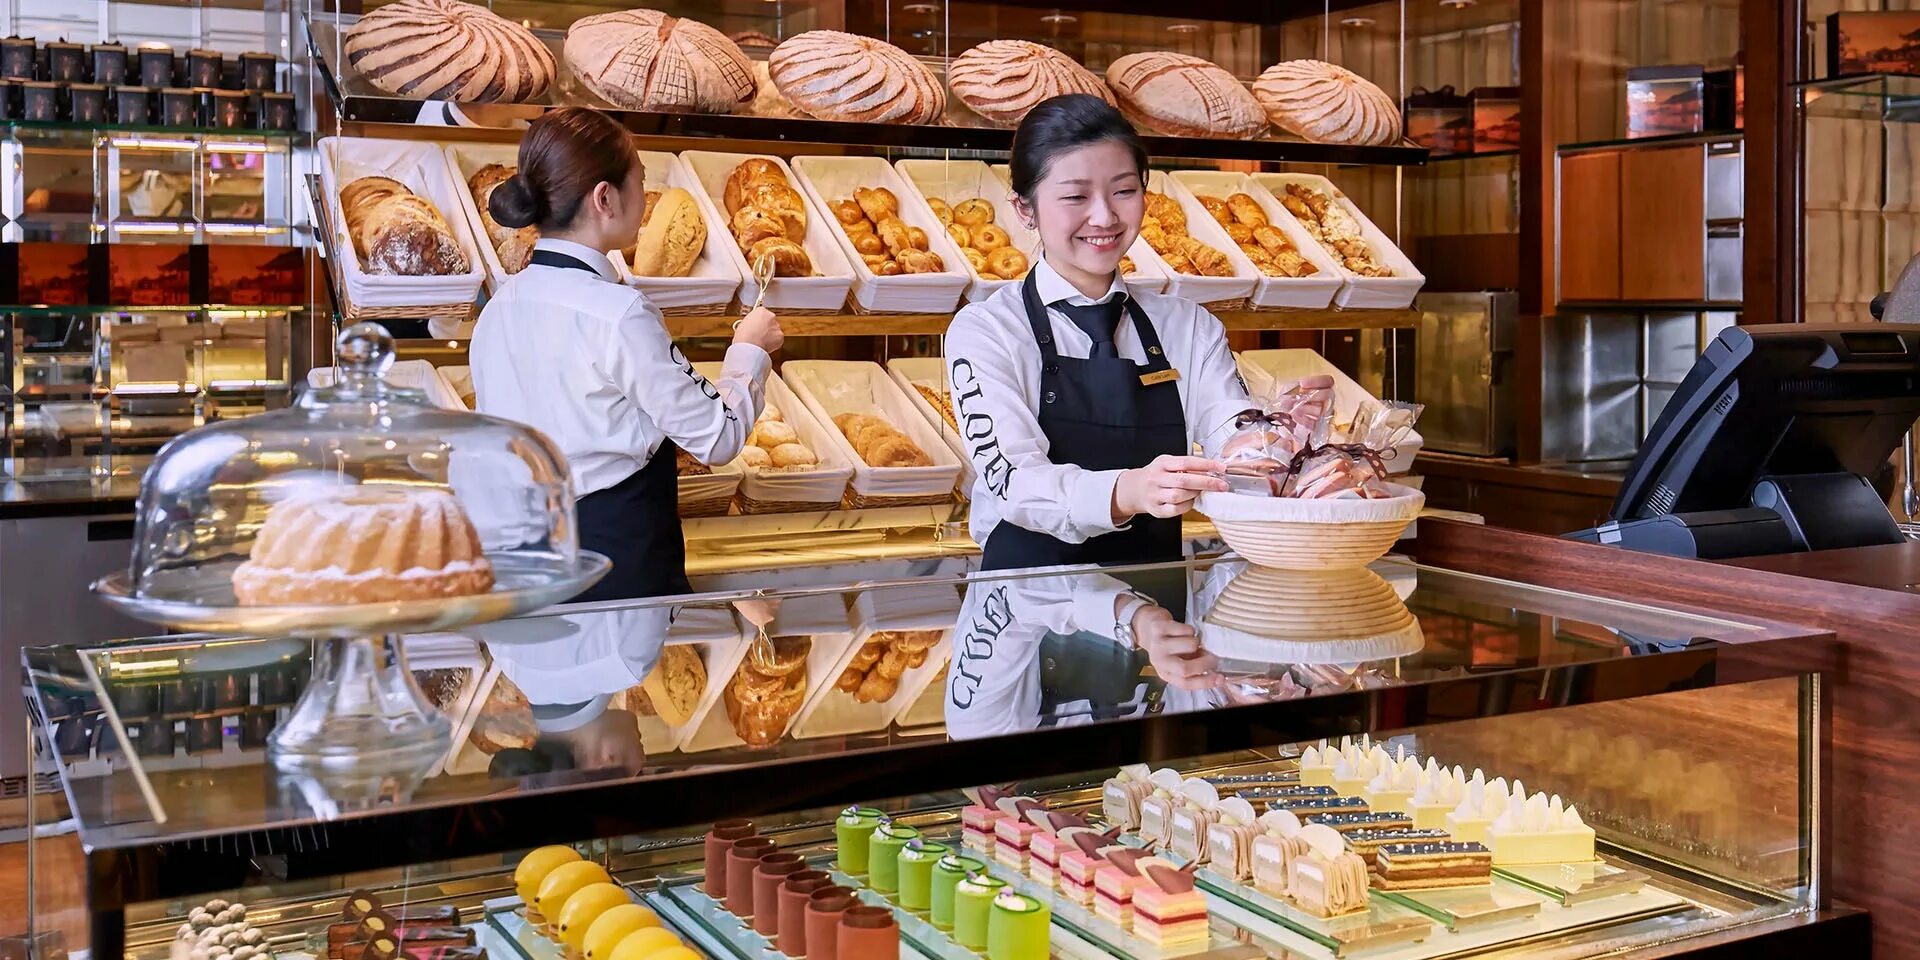 Пекарь магазин для кондитеров. Японская пекарня. Пекарня в Японии. Корейская пекарня. Выкладка кондитерских изделий.